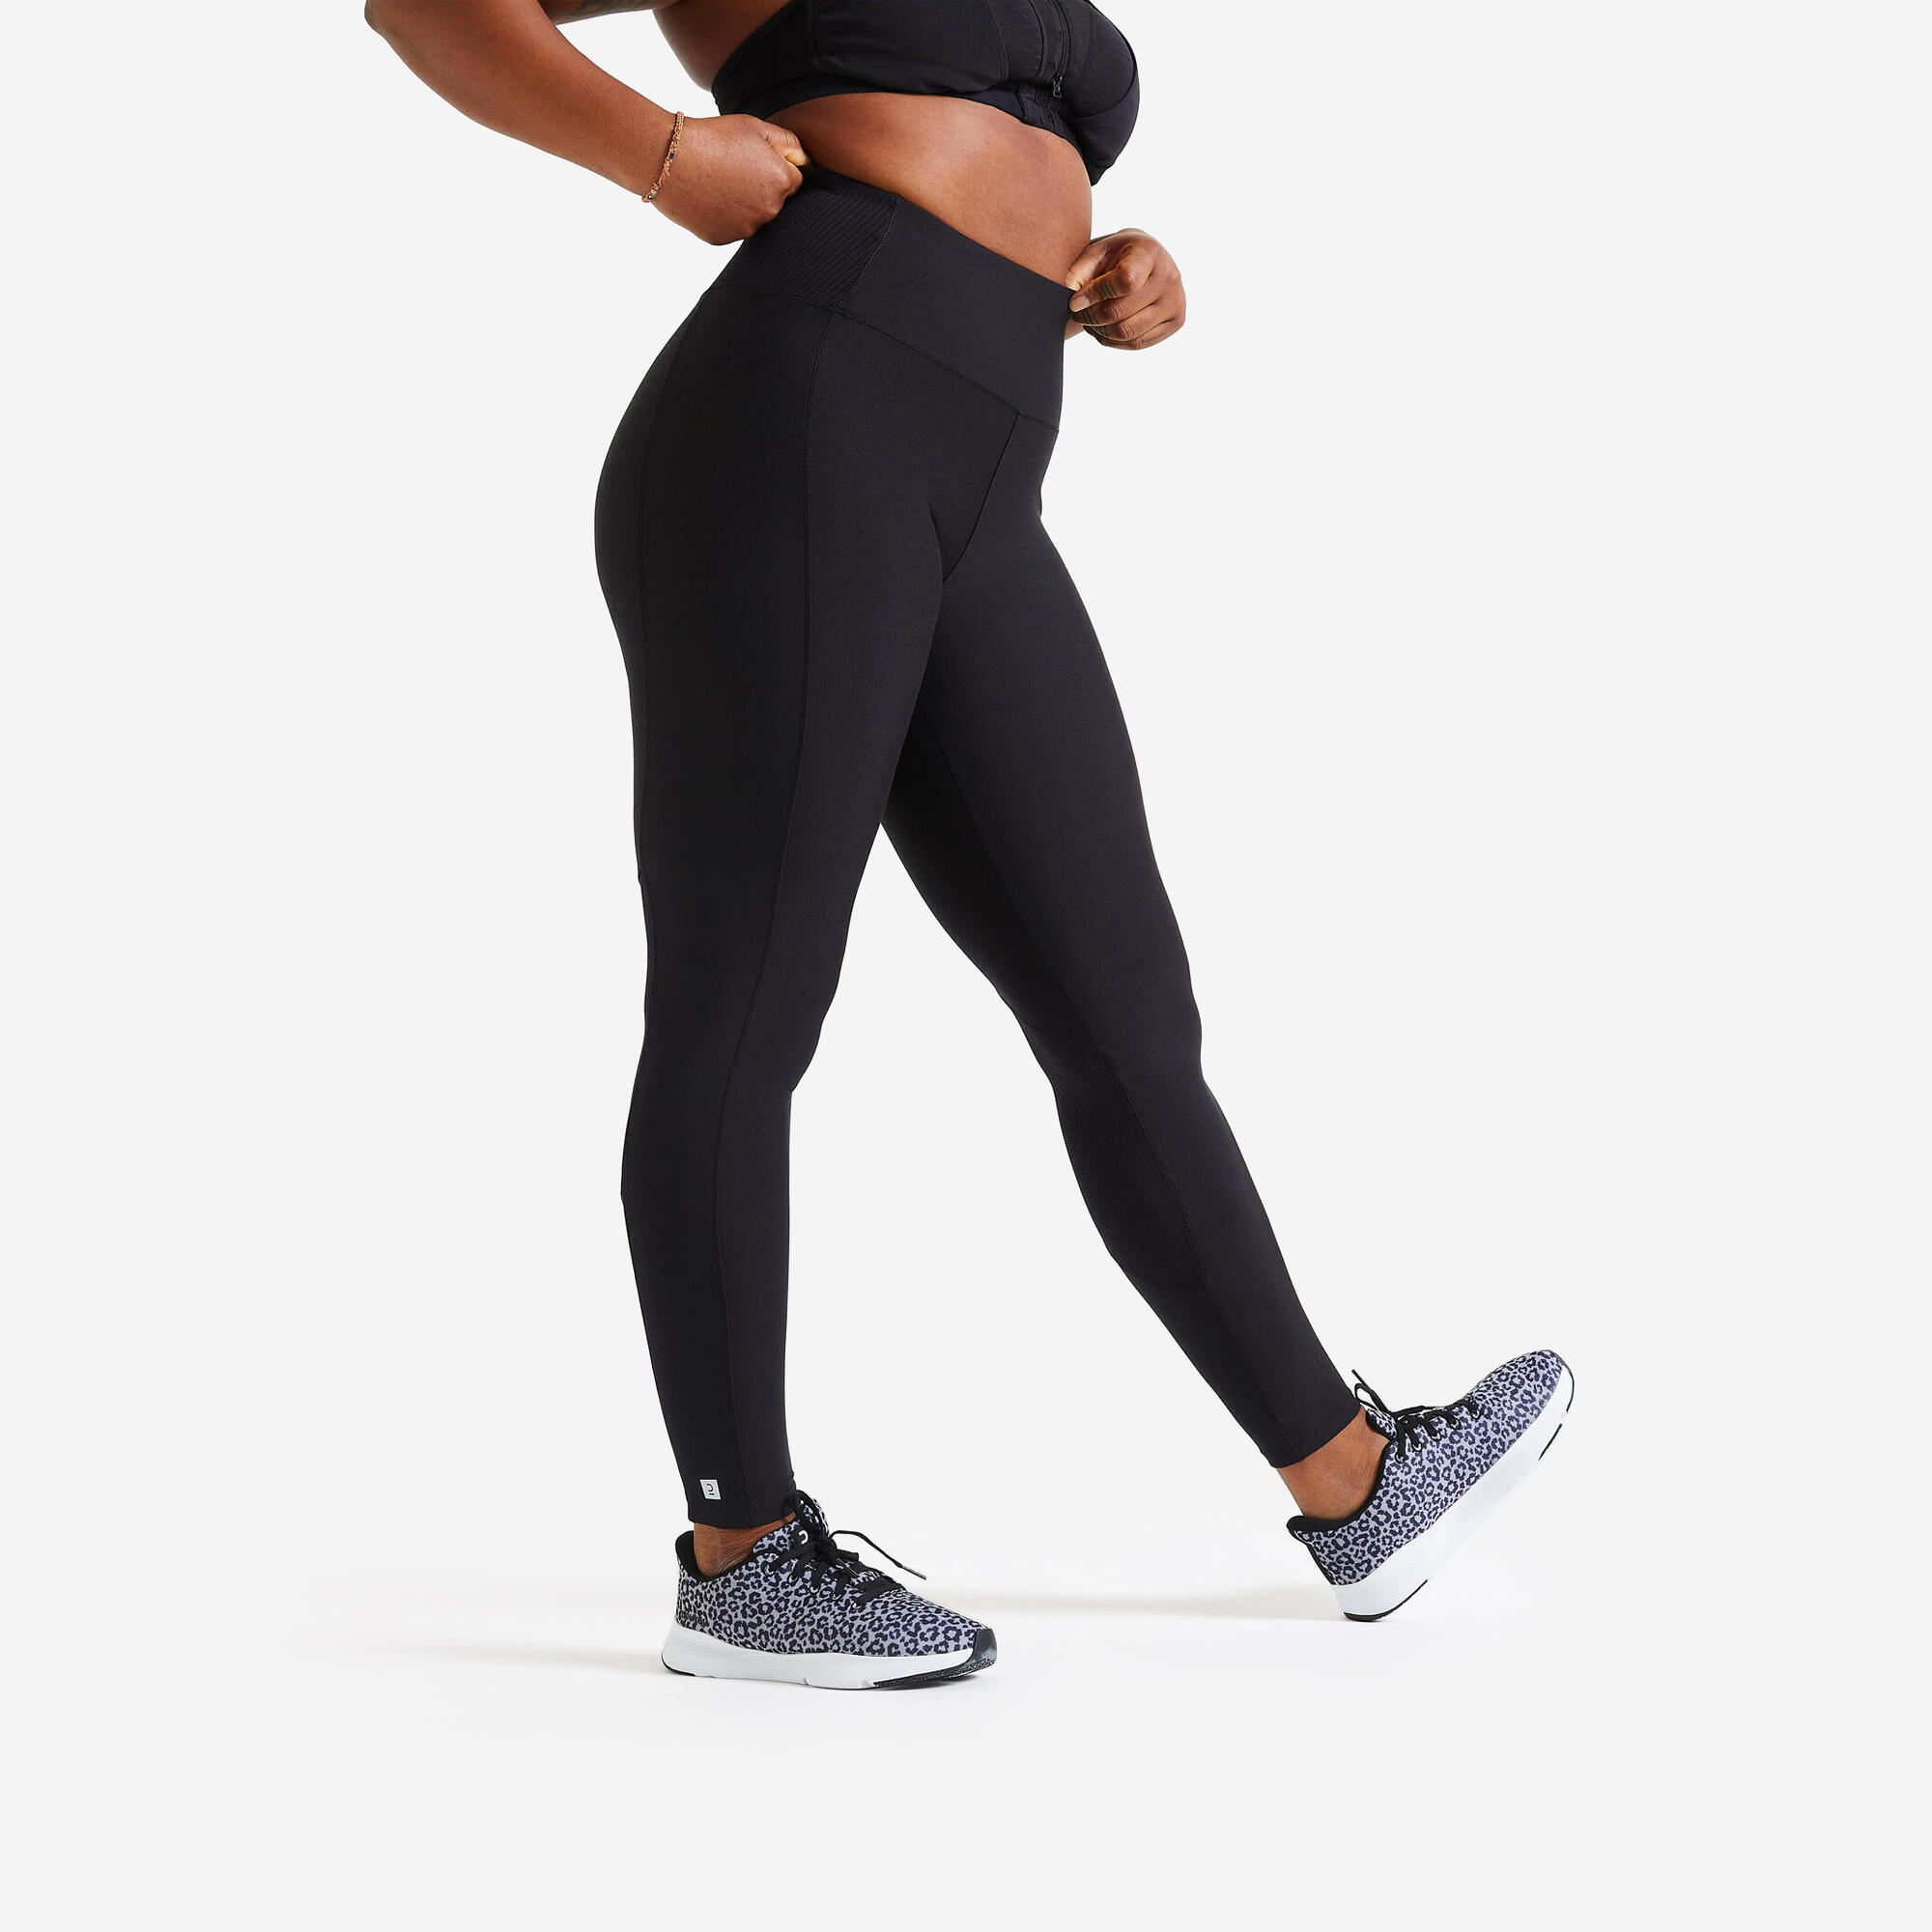 Legging 7/8 sport femme – 100 noir